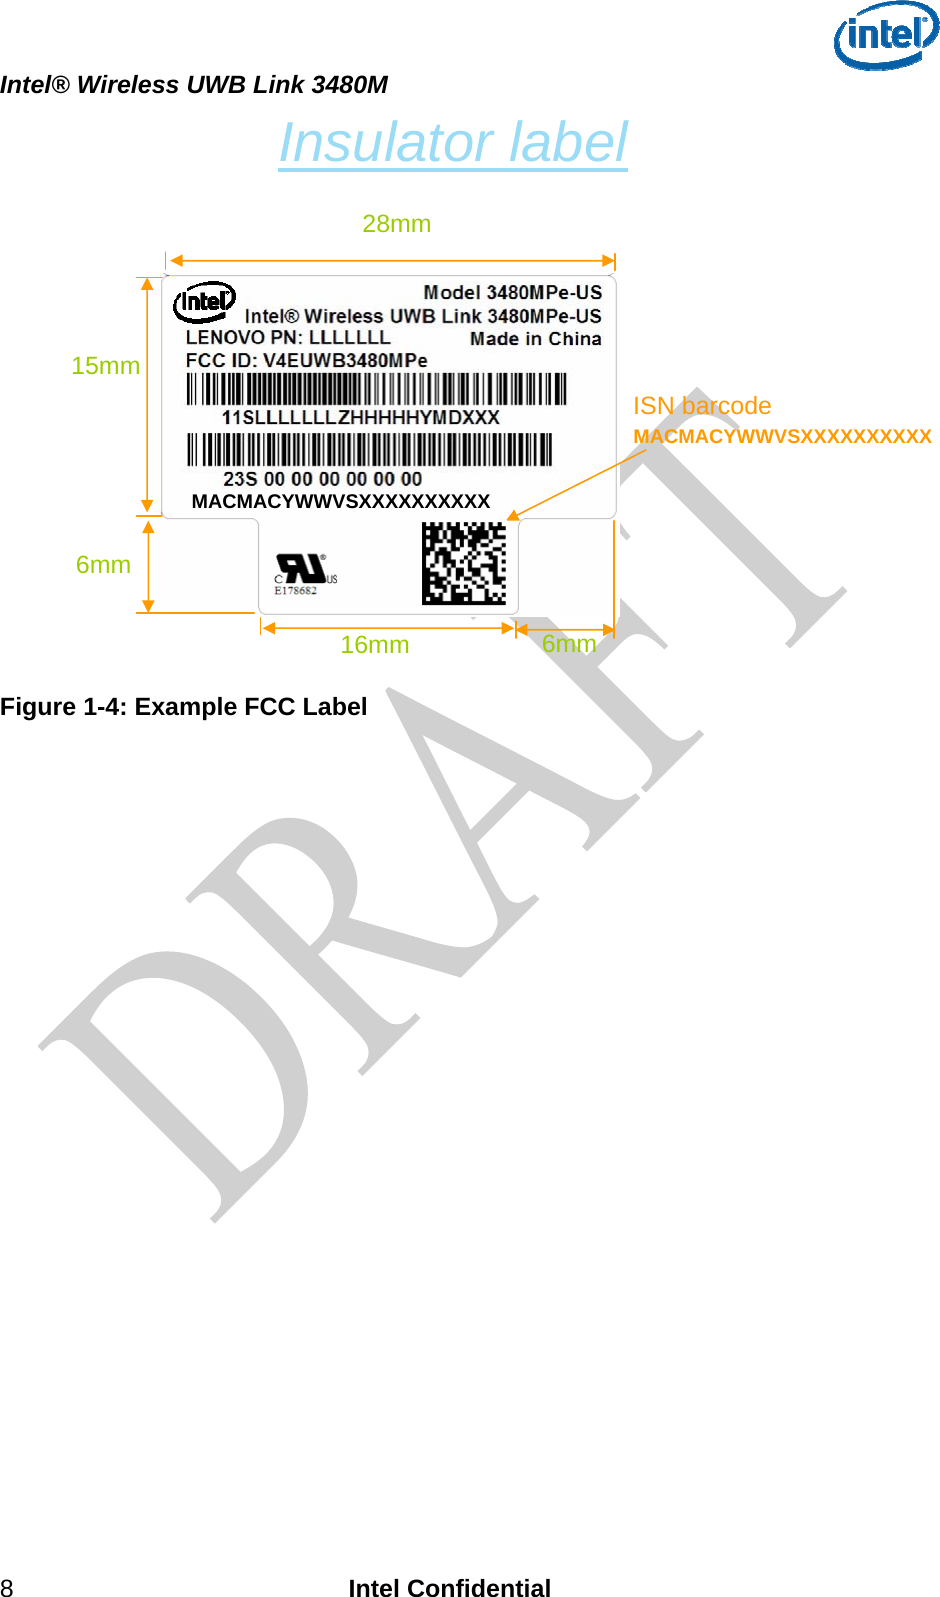  Intel® Wireless UWB Link 3480M 8 Intel Confidential Insulator label 28mm Figure 1-4: Example FCC Label   MACMACYWWVSXXXXXXXXXX15mm ISN barcode 16mm 6mm 6mmMACMACYWWVSXXXXXXXXXX